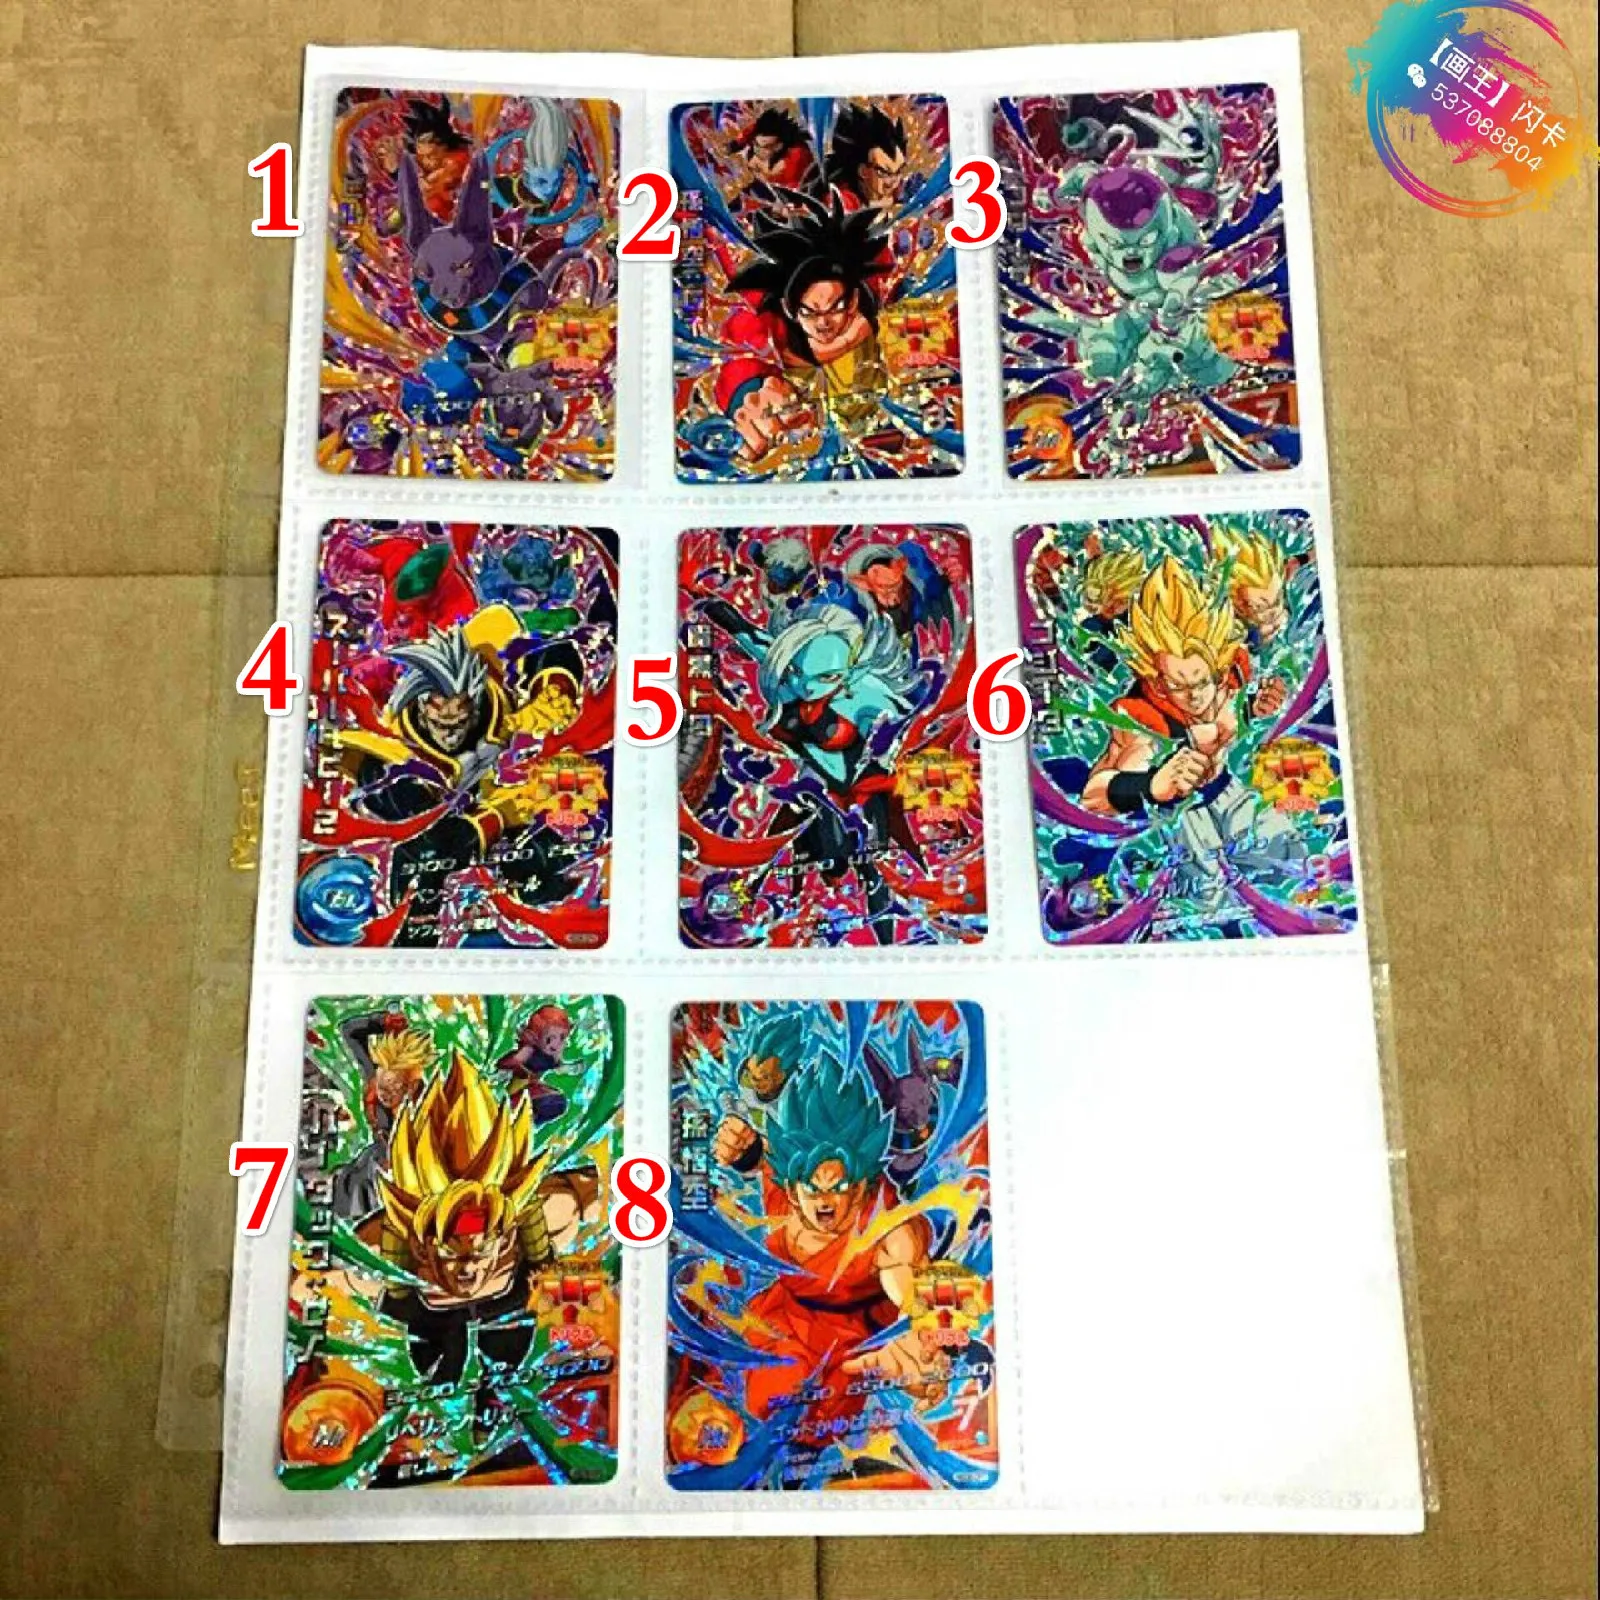 Япония Dragon Ball Hero Card HGD6 Gogeta Бог, супер сайян игрушки Goku Хобби Коллекционные игры Коллекция аниме-открытки